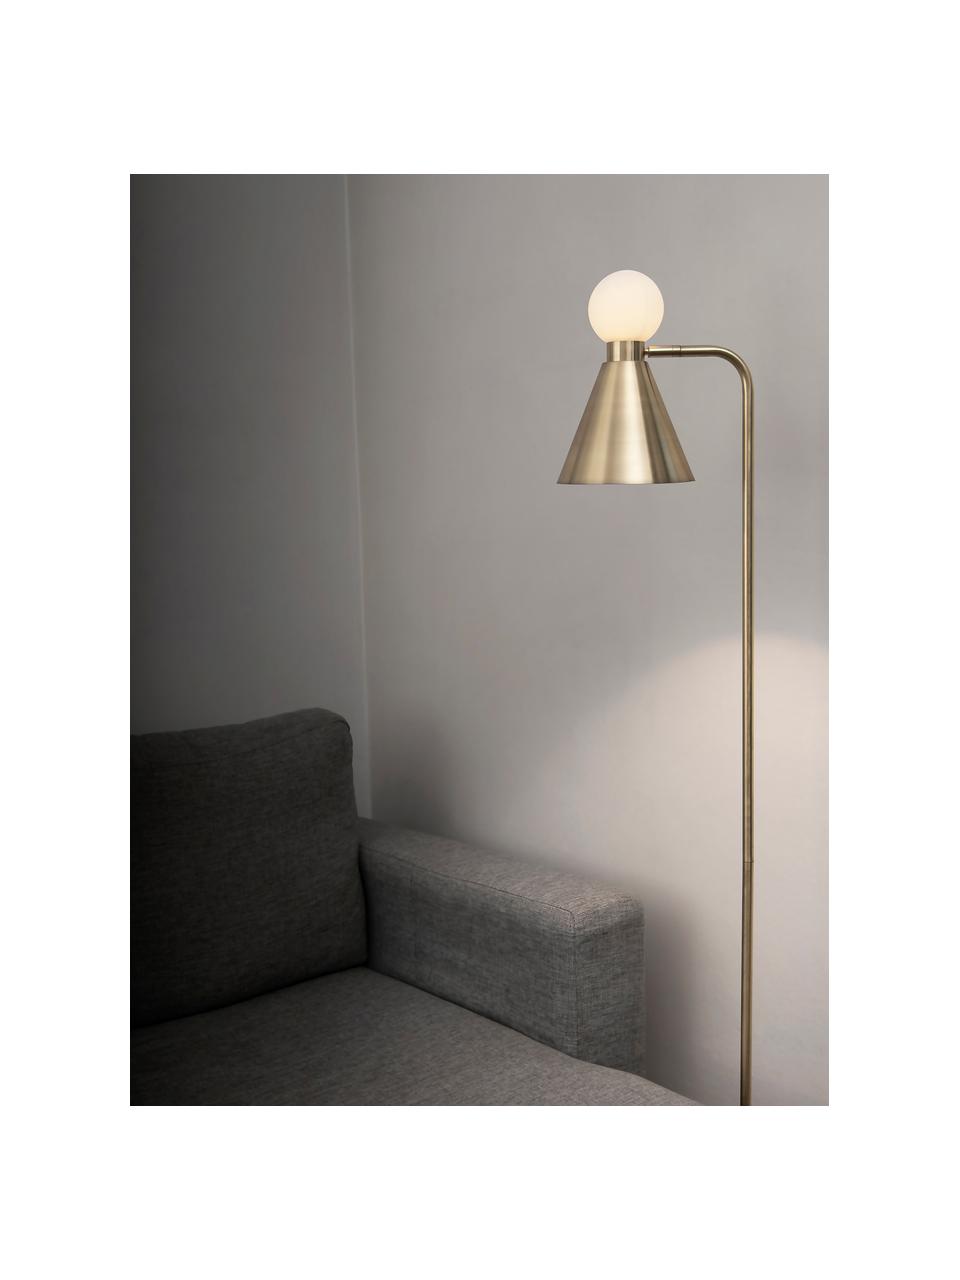 Leeslamp Ludo met lichtgevende glazen decoratie, Lampenkap: vermessingd metaal, Lampvoet: vermessingd metaal, Geborsteld messingkleurig, wit, 18 x 156 cm